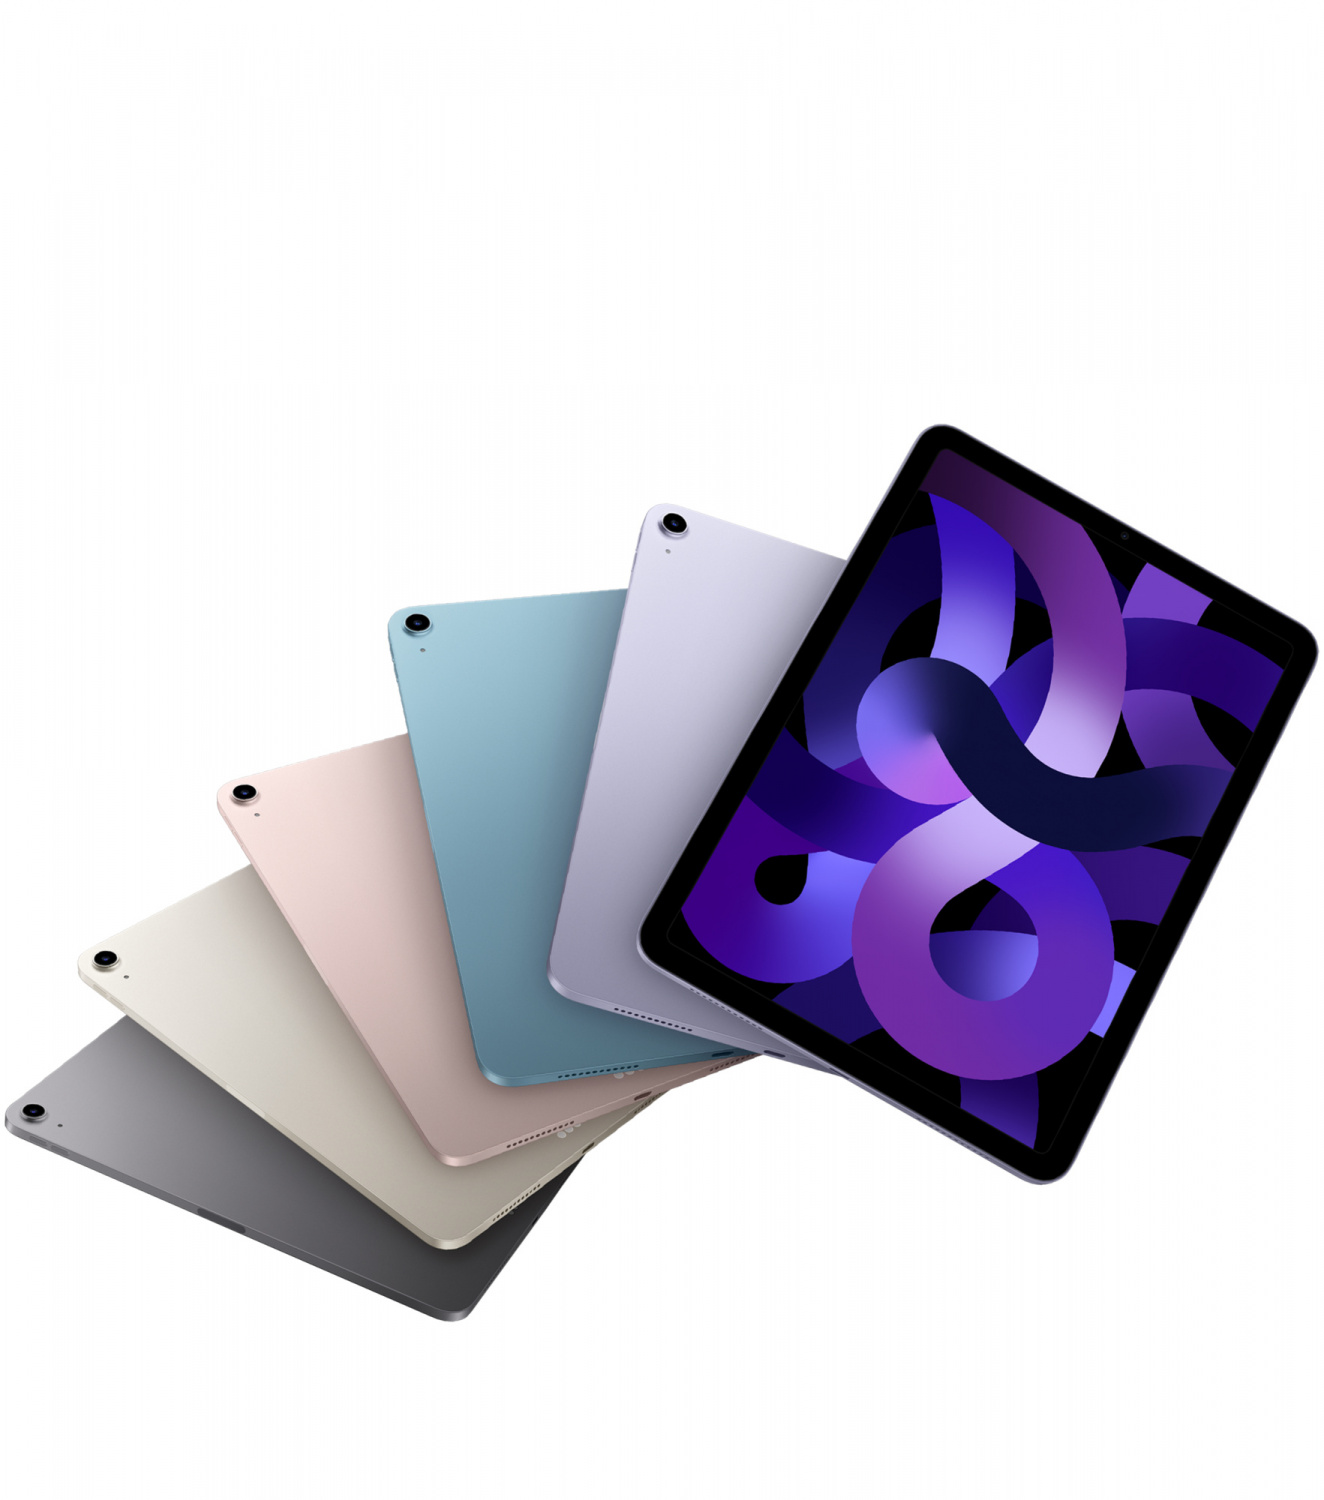 Купить планшет apple ipad air 5 поколение m1 2022 wi-fi + cellular 256 гб, pink Apple iPad Air в официальном магазине Apple, Samsung, Xiaomi. iPixel.ru Купить, заказ, кредит, рассрочка, отзывы,  характеристики, цена,  фотографии, в подарок.